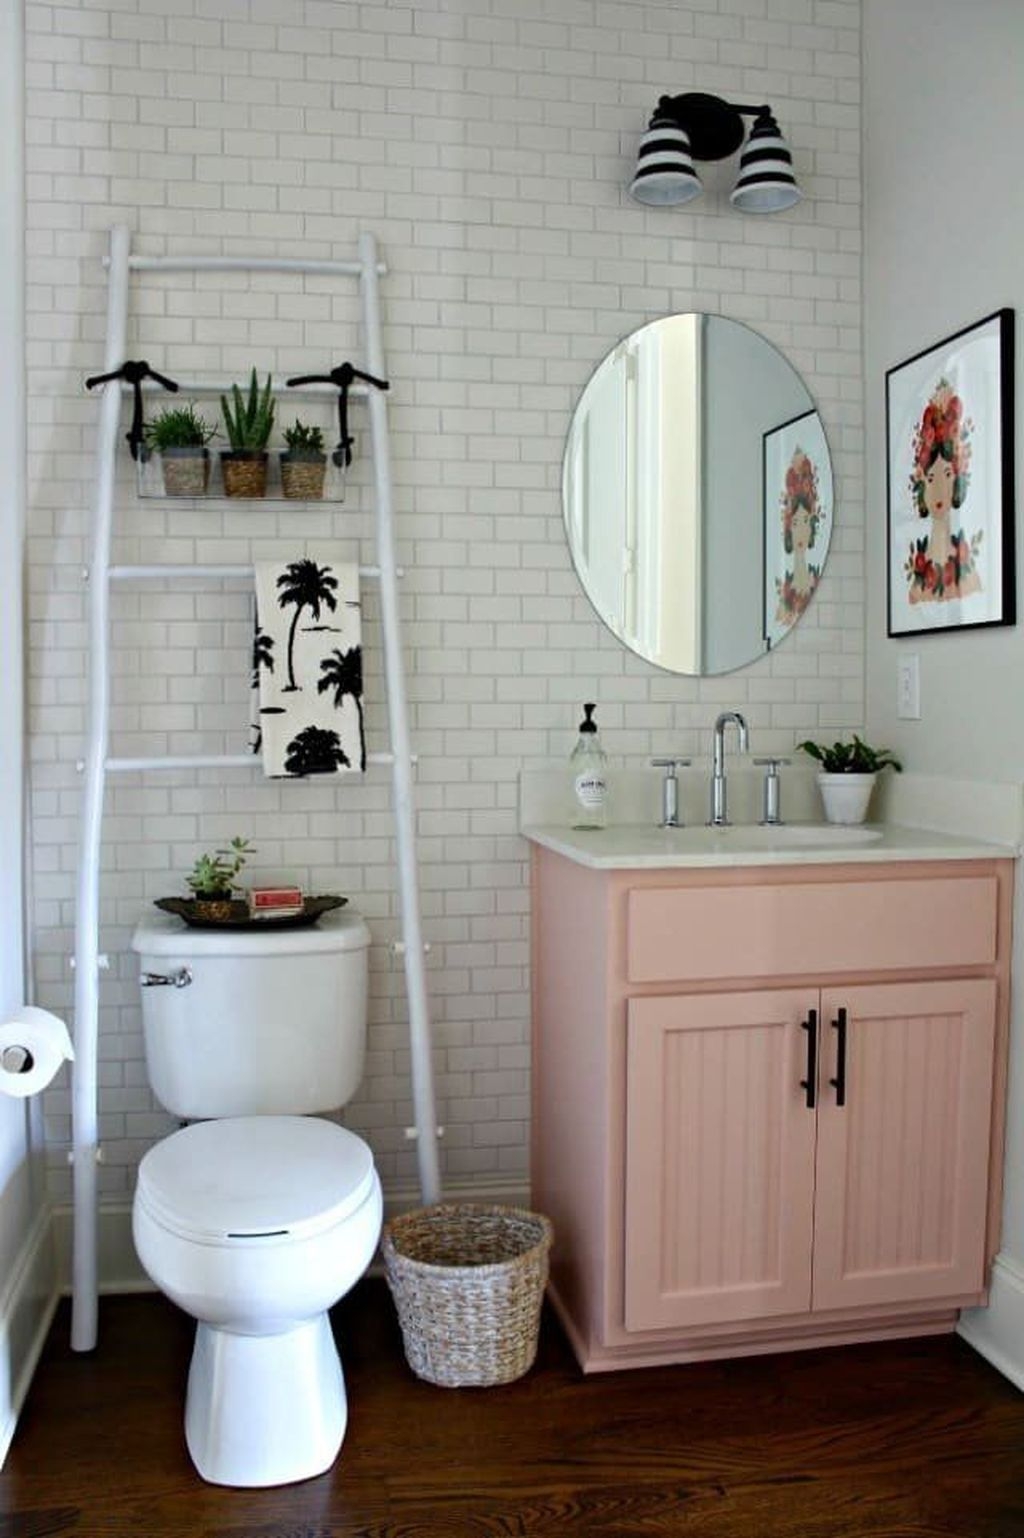 Brilliant Bathroom Design Ideas For Small Space 09